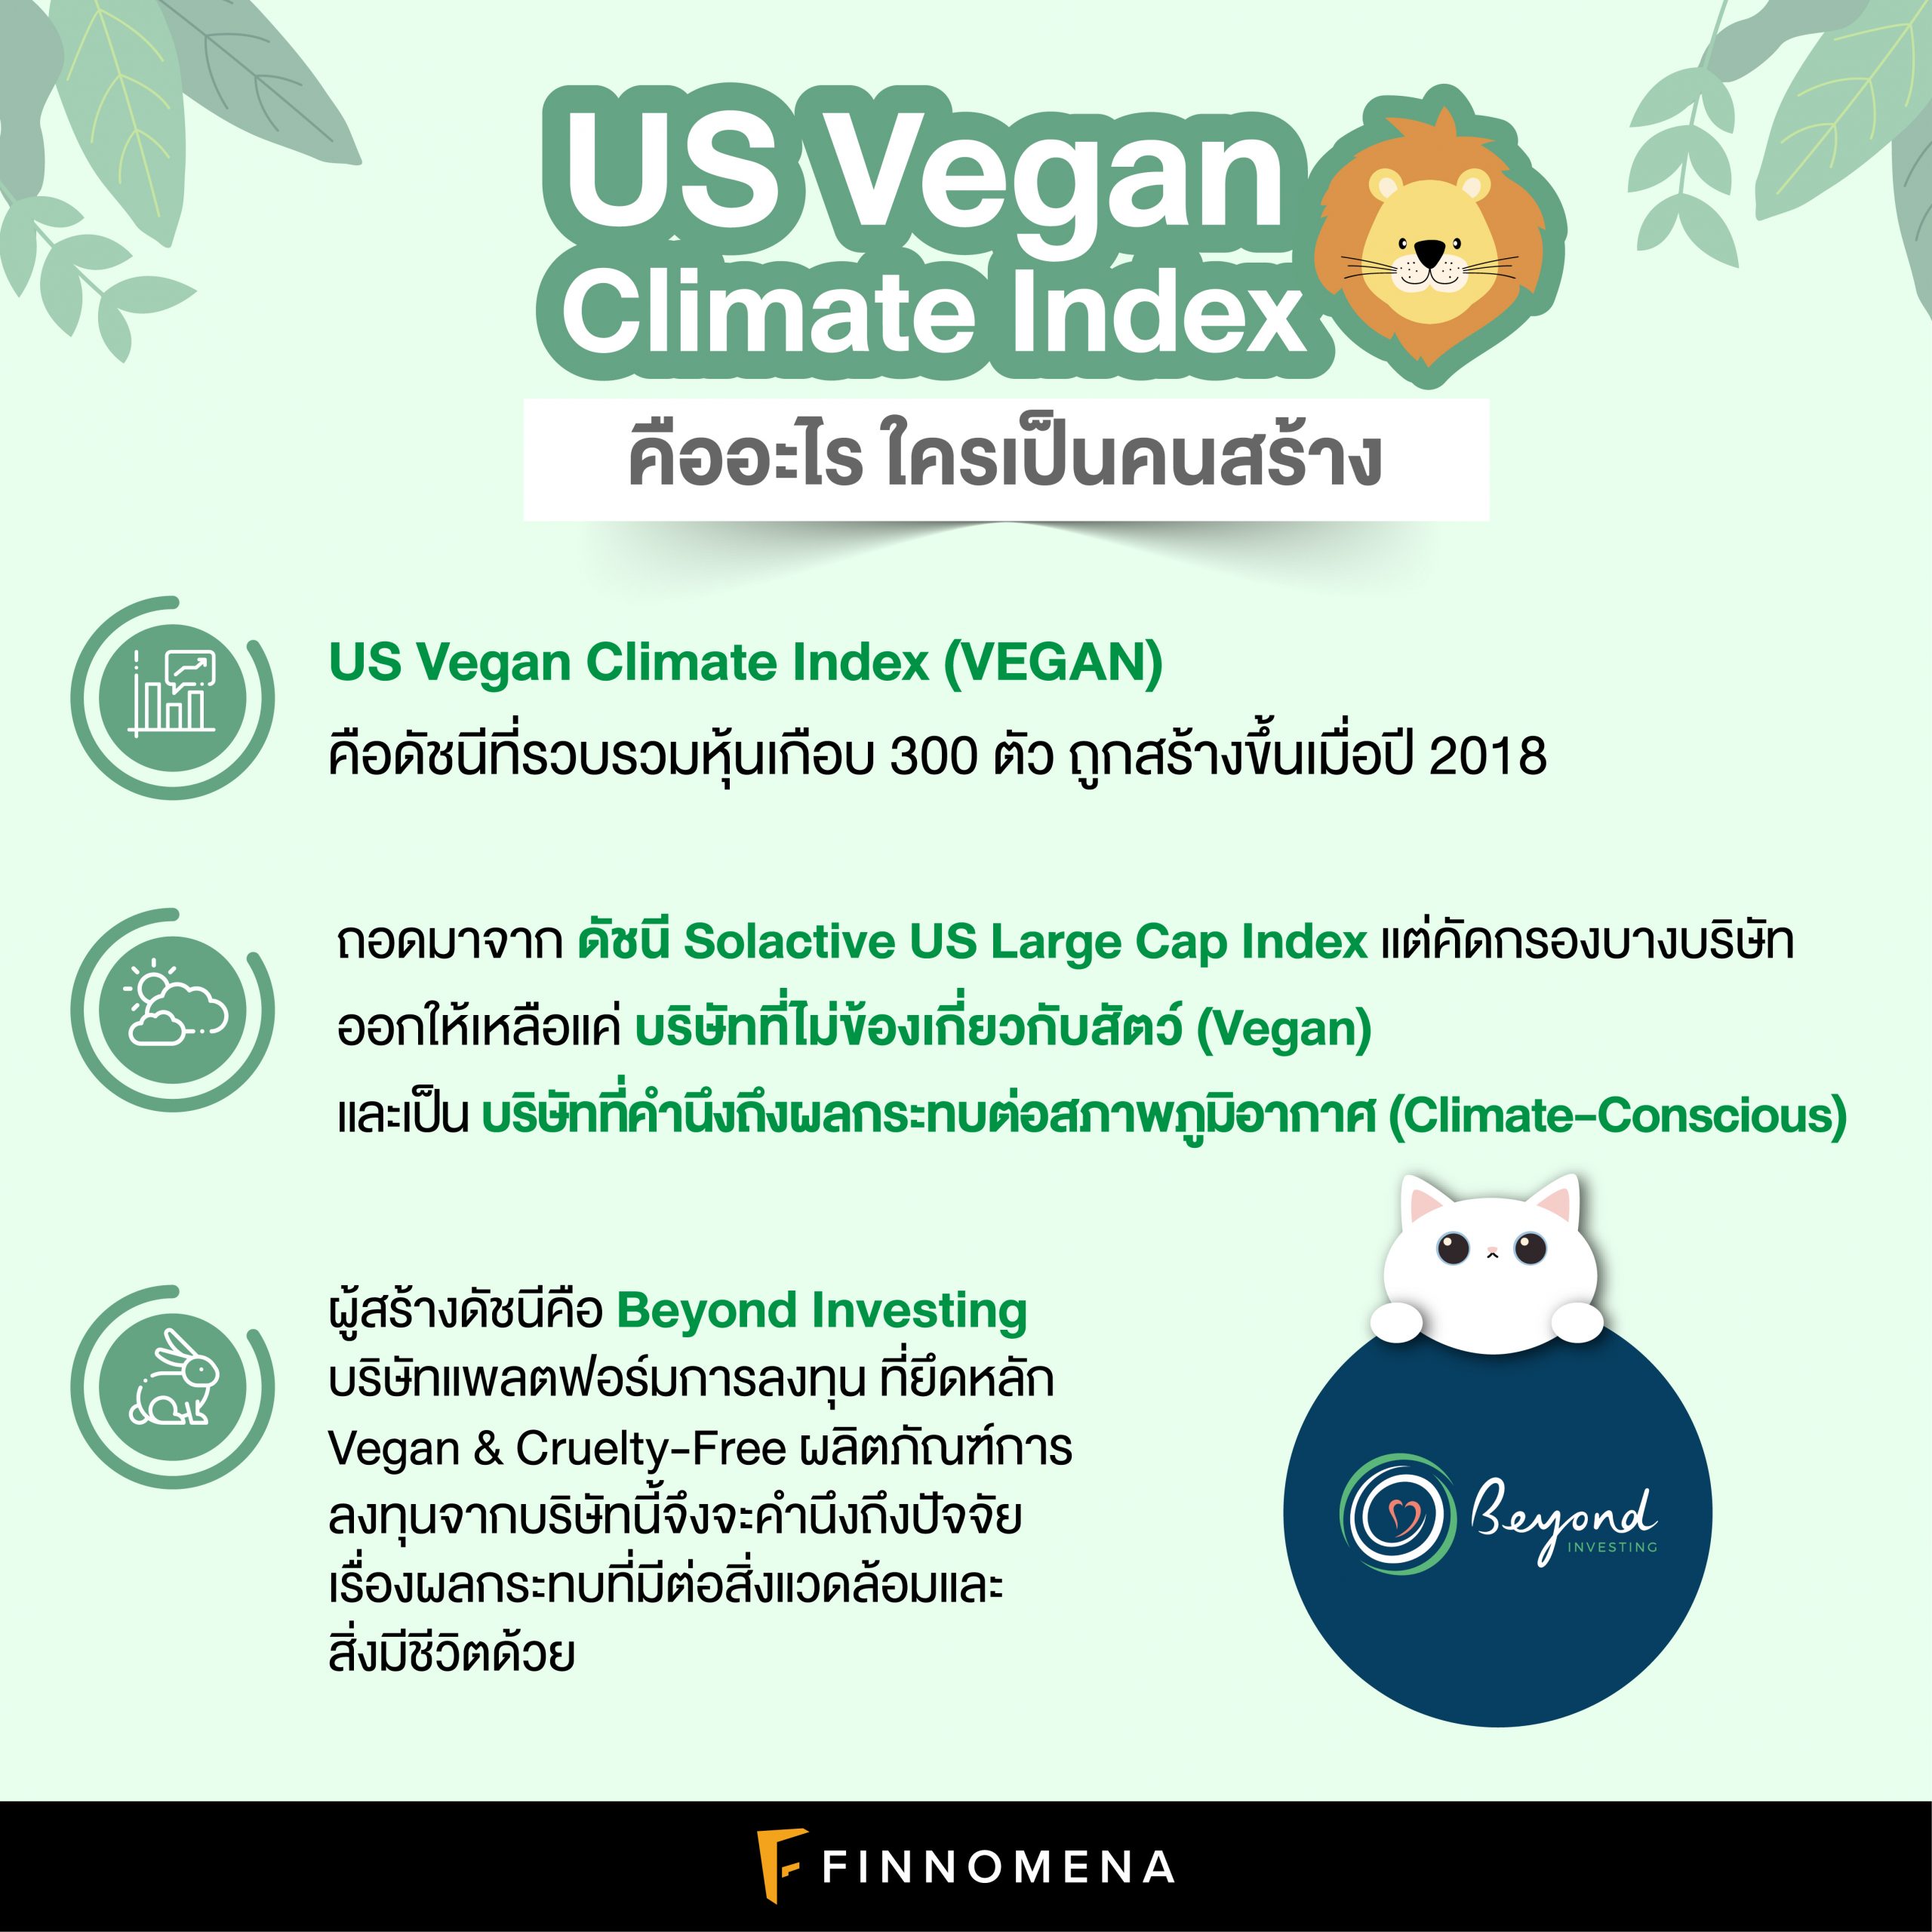 ทำความรู้จัก US Vegan Climate Index: ดัชนีหุ้นสำหรับคนรักสัตว์